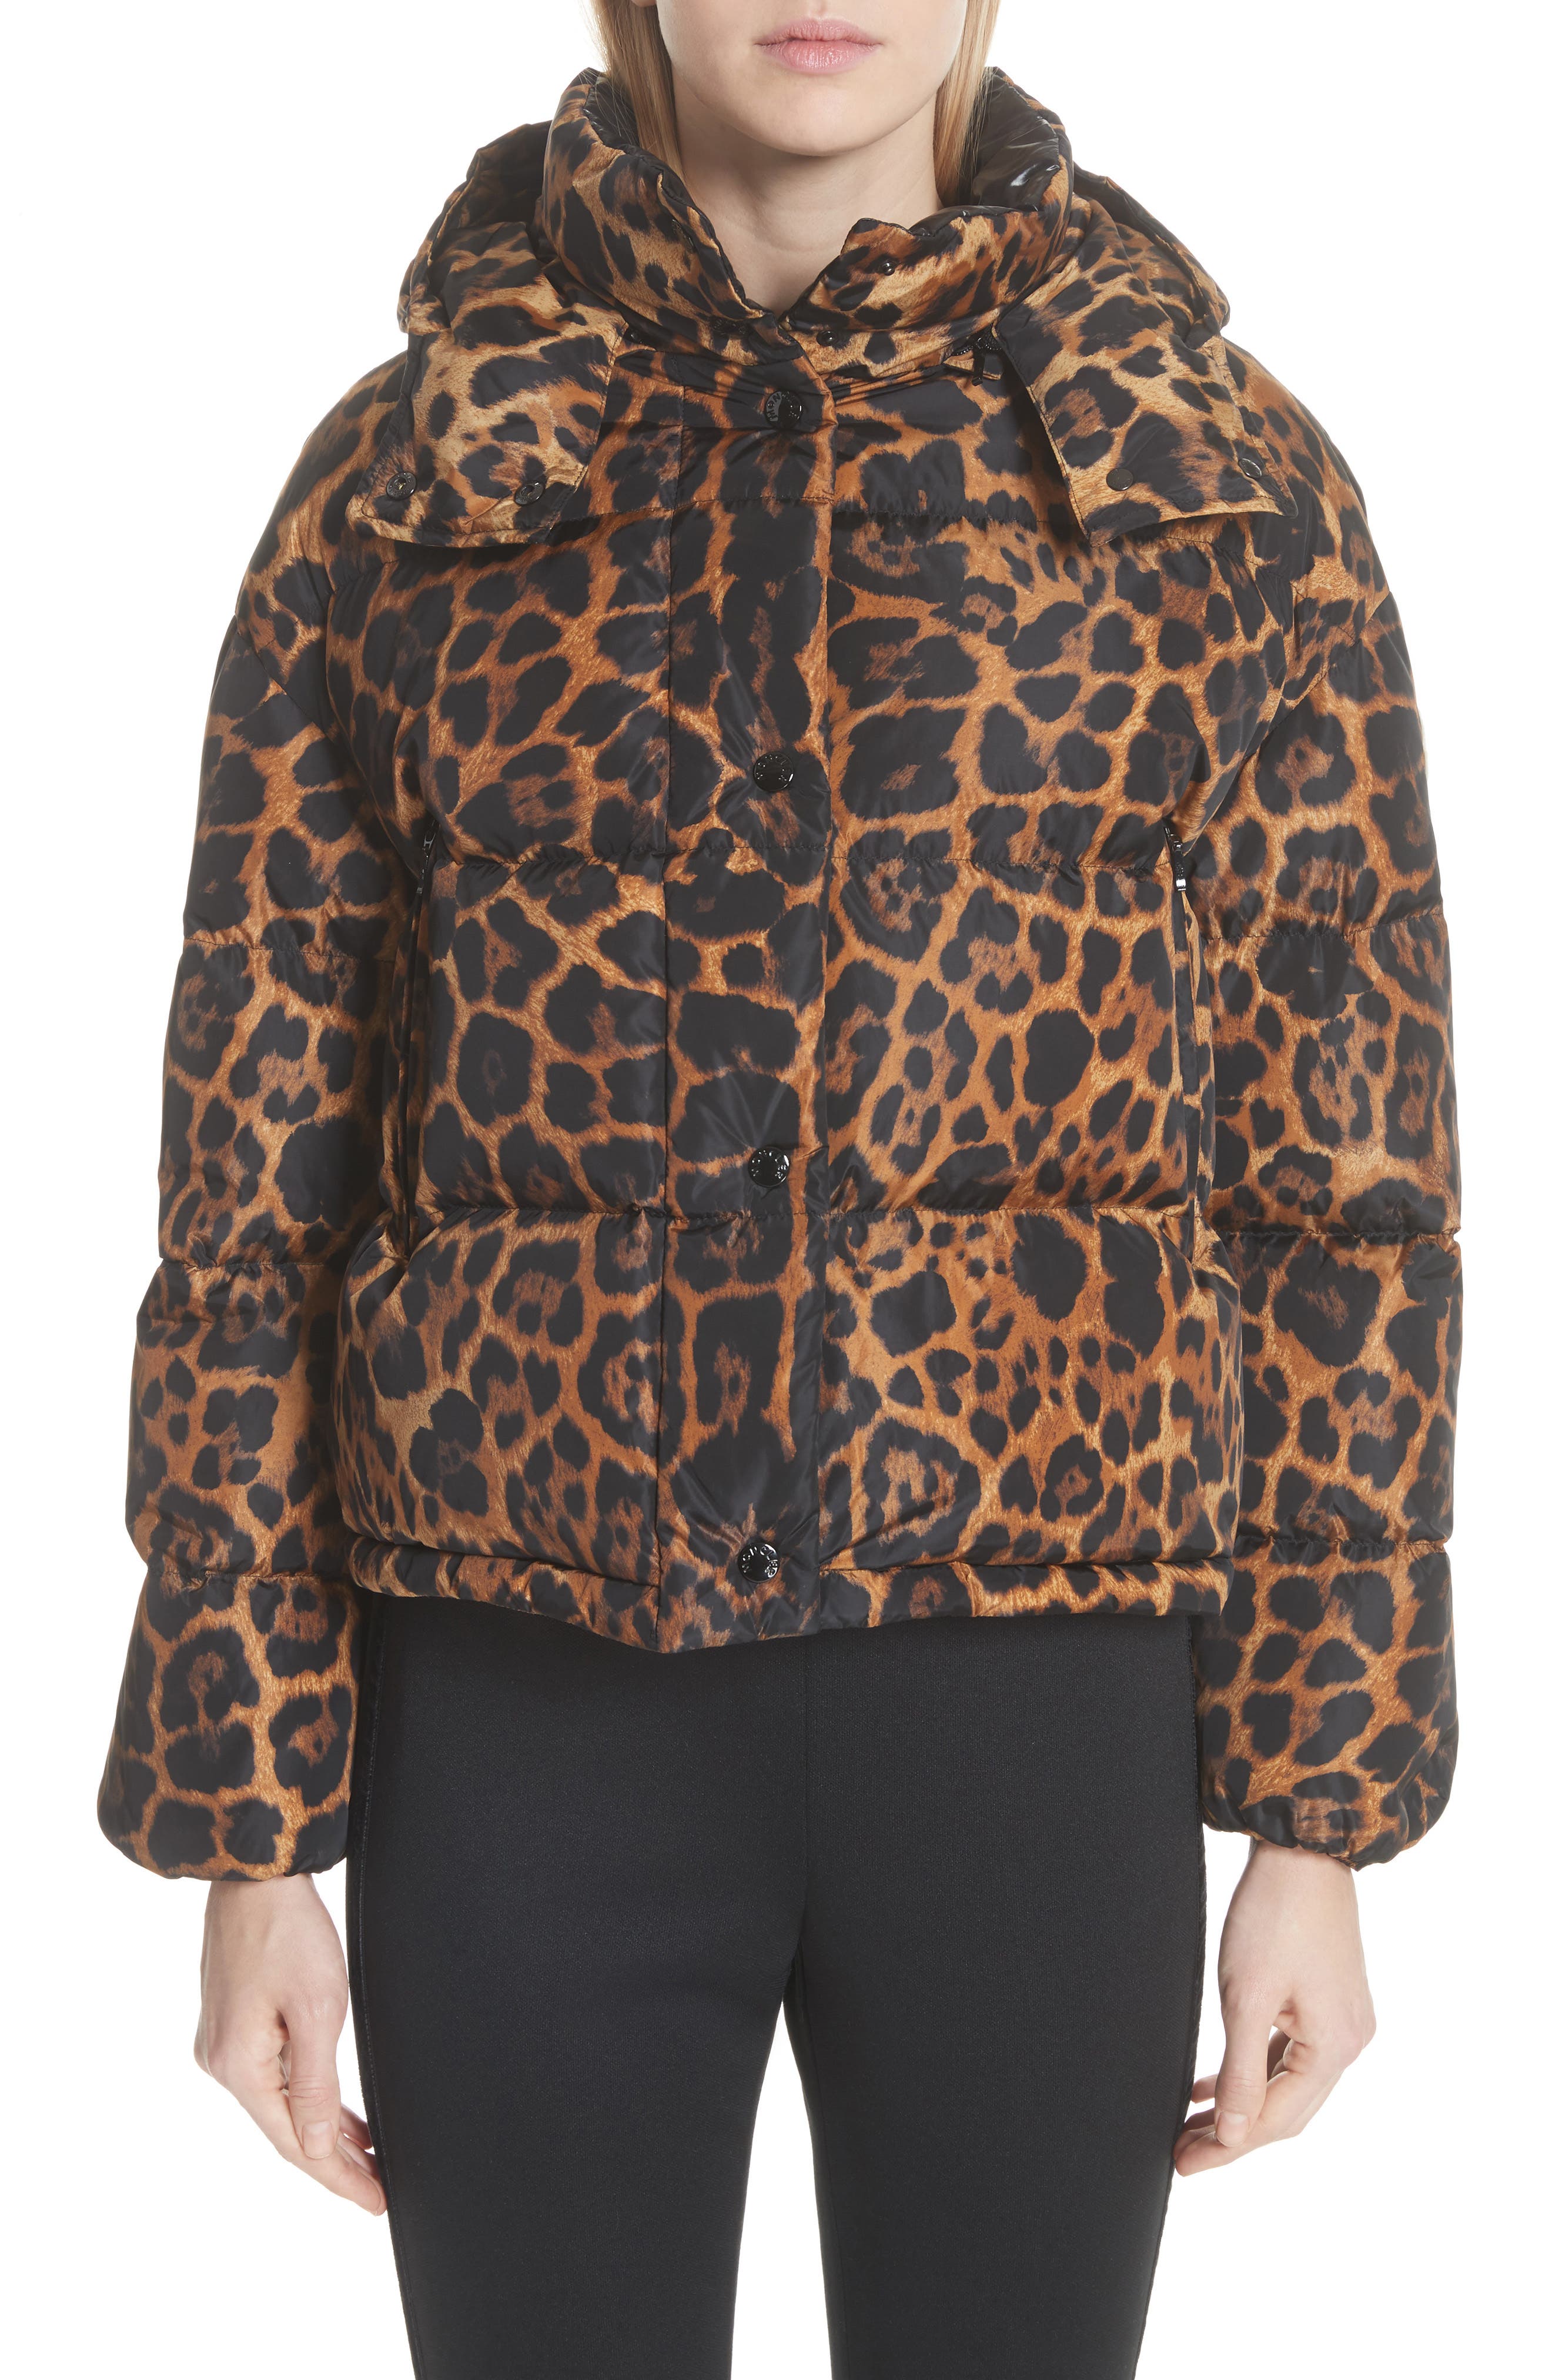 moncler leopard coat